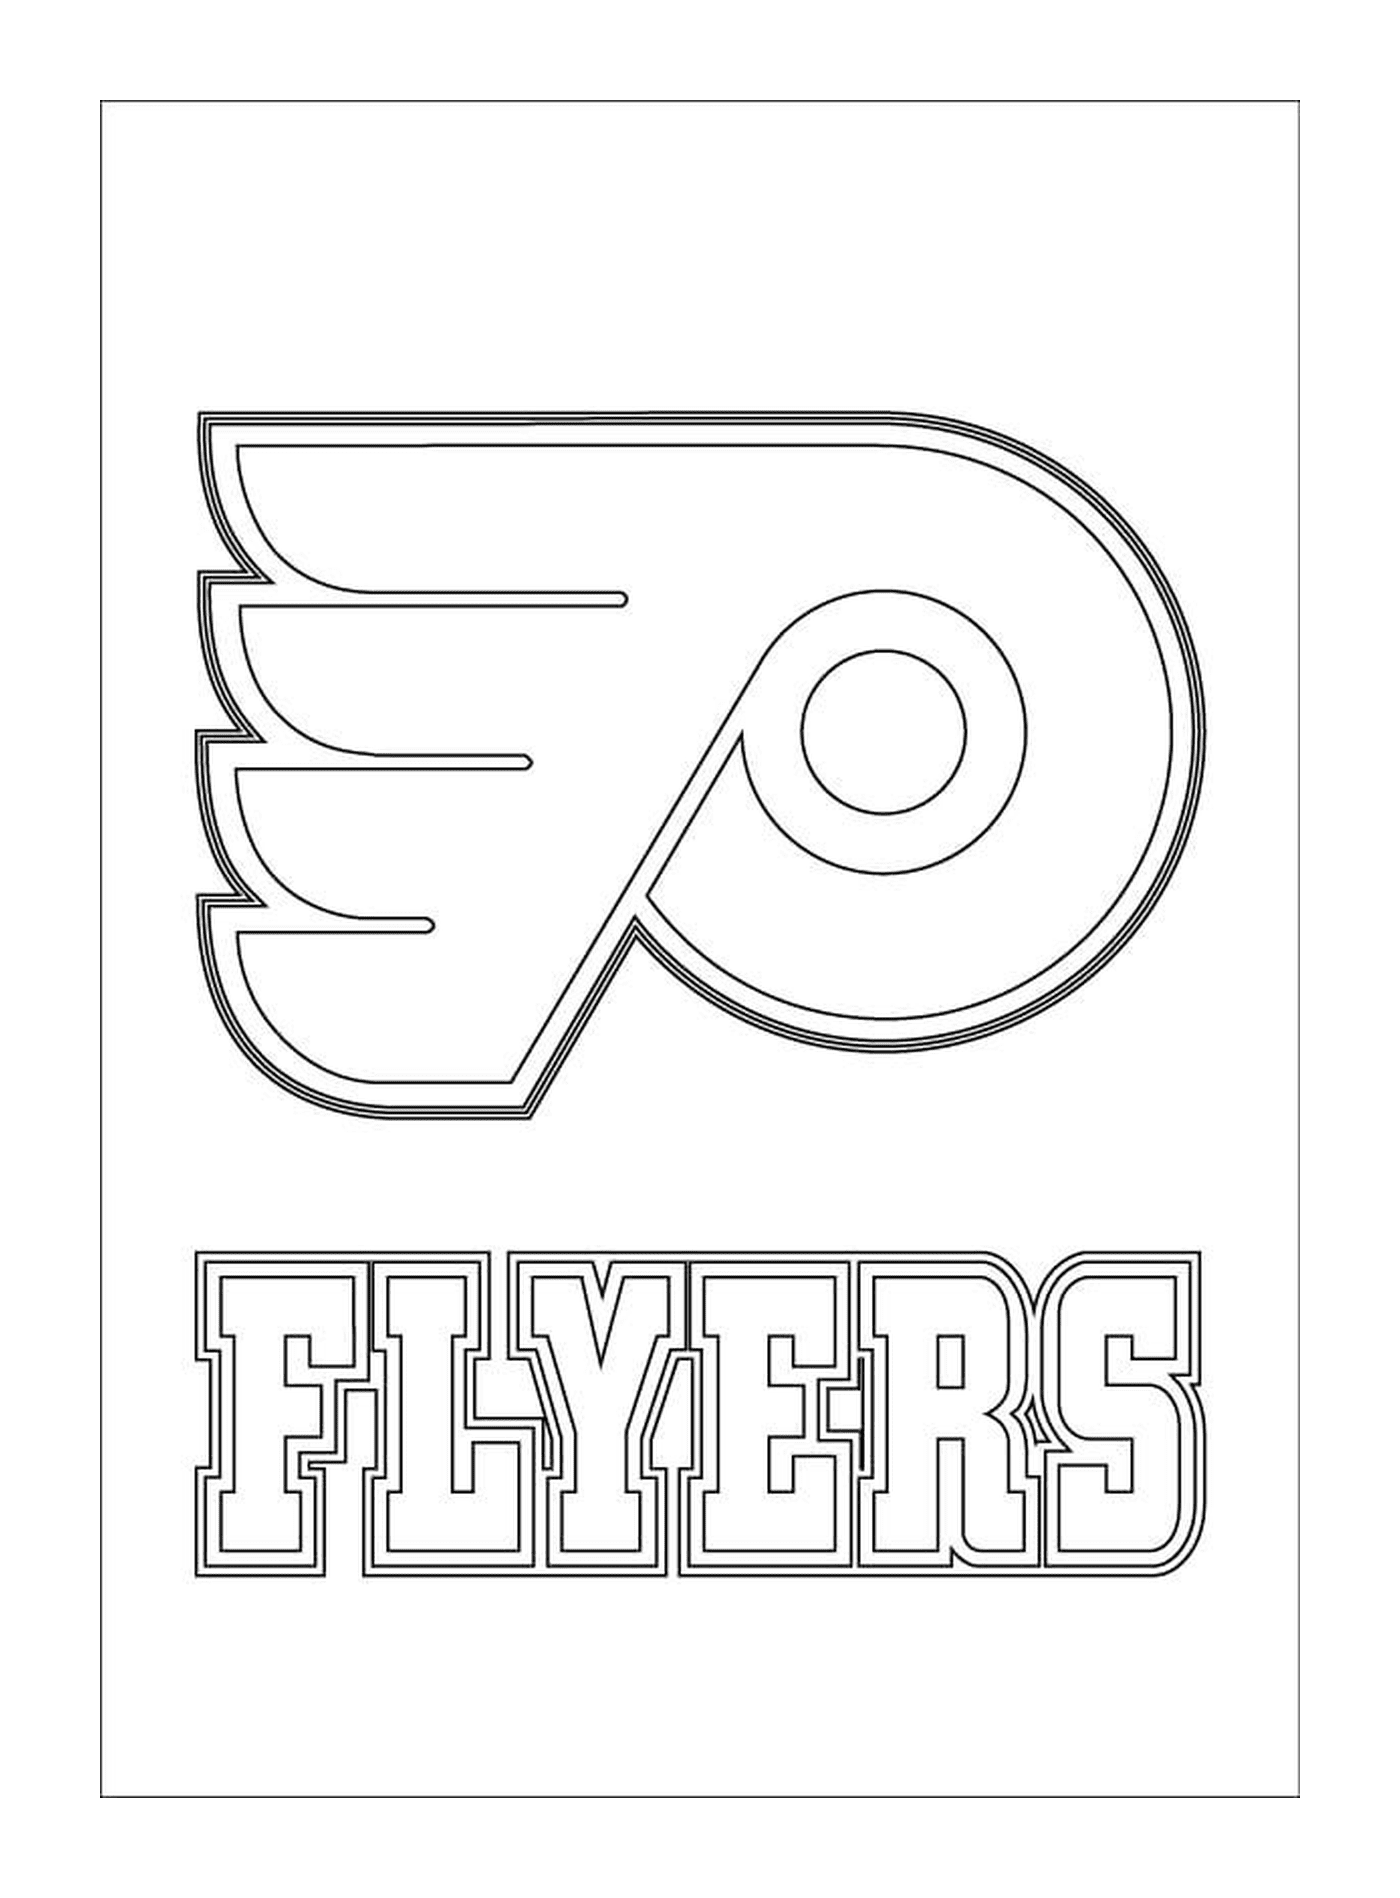  Logo de Philadelphia Flyers 